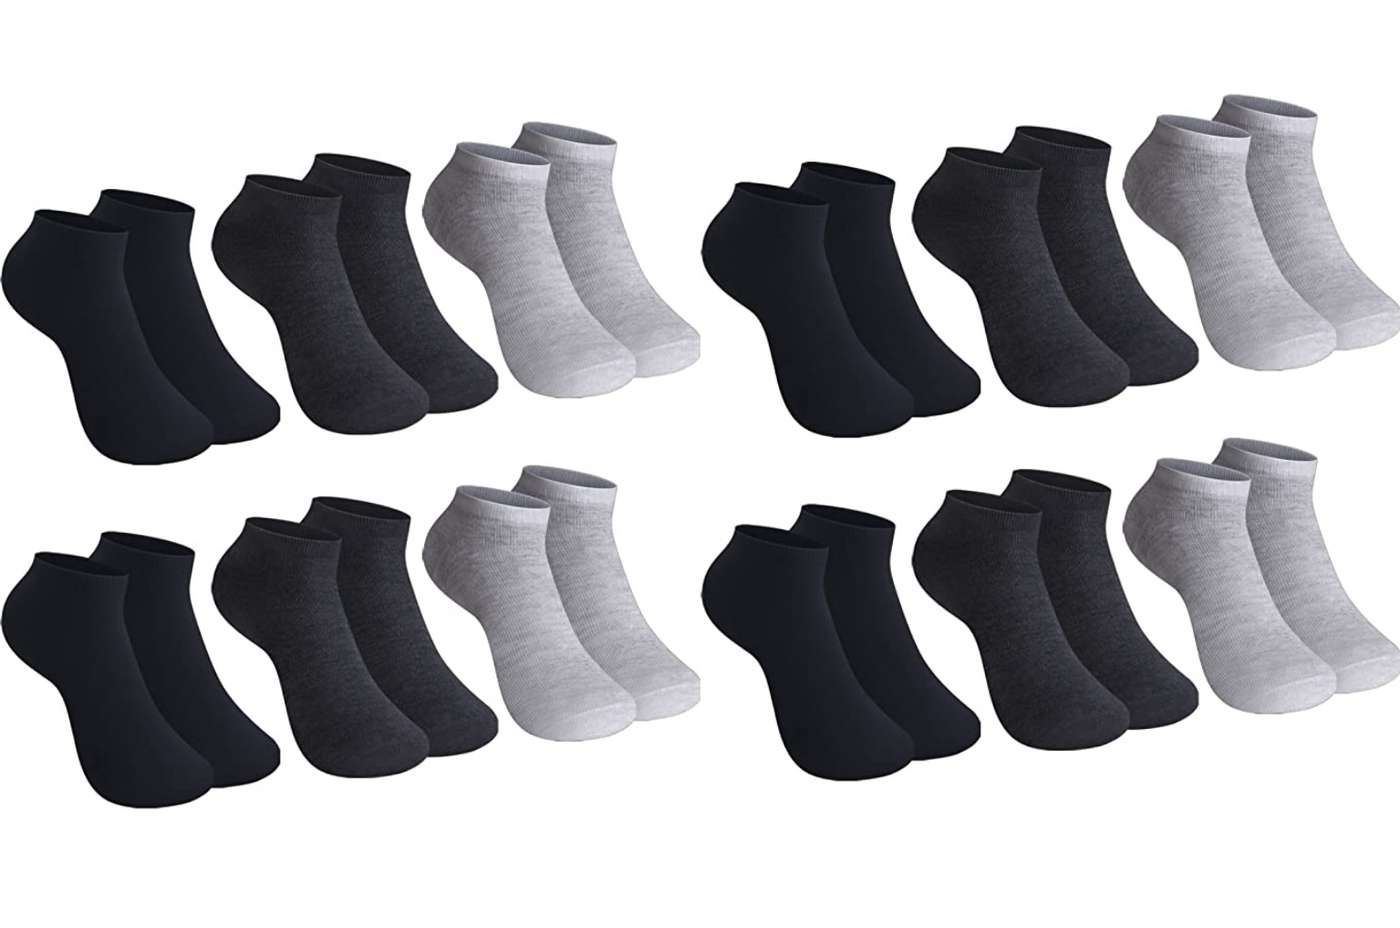 SG S.GIGEL 12 pares de calcetines para niños para niñas con un alto porcentaje de algodón coloridos calcetines de deporte en varios motivos / tallas 23-26 35-38 27-30 31-34 